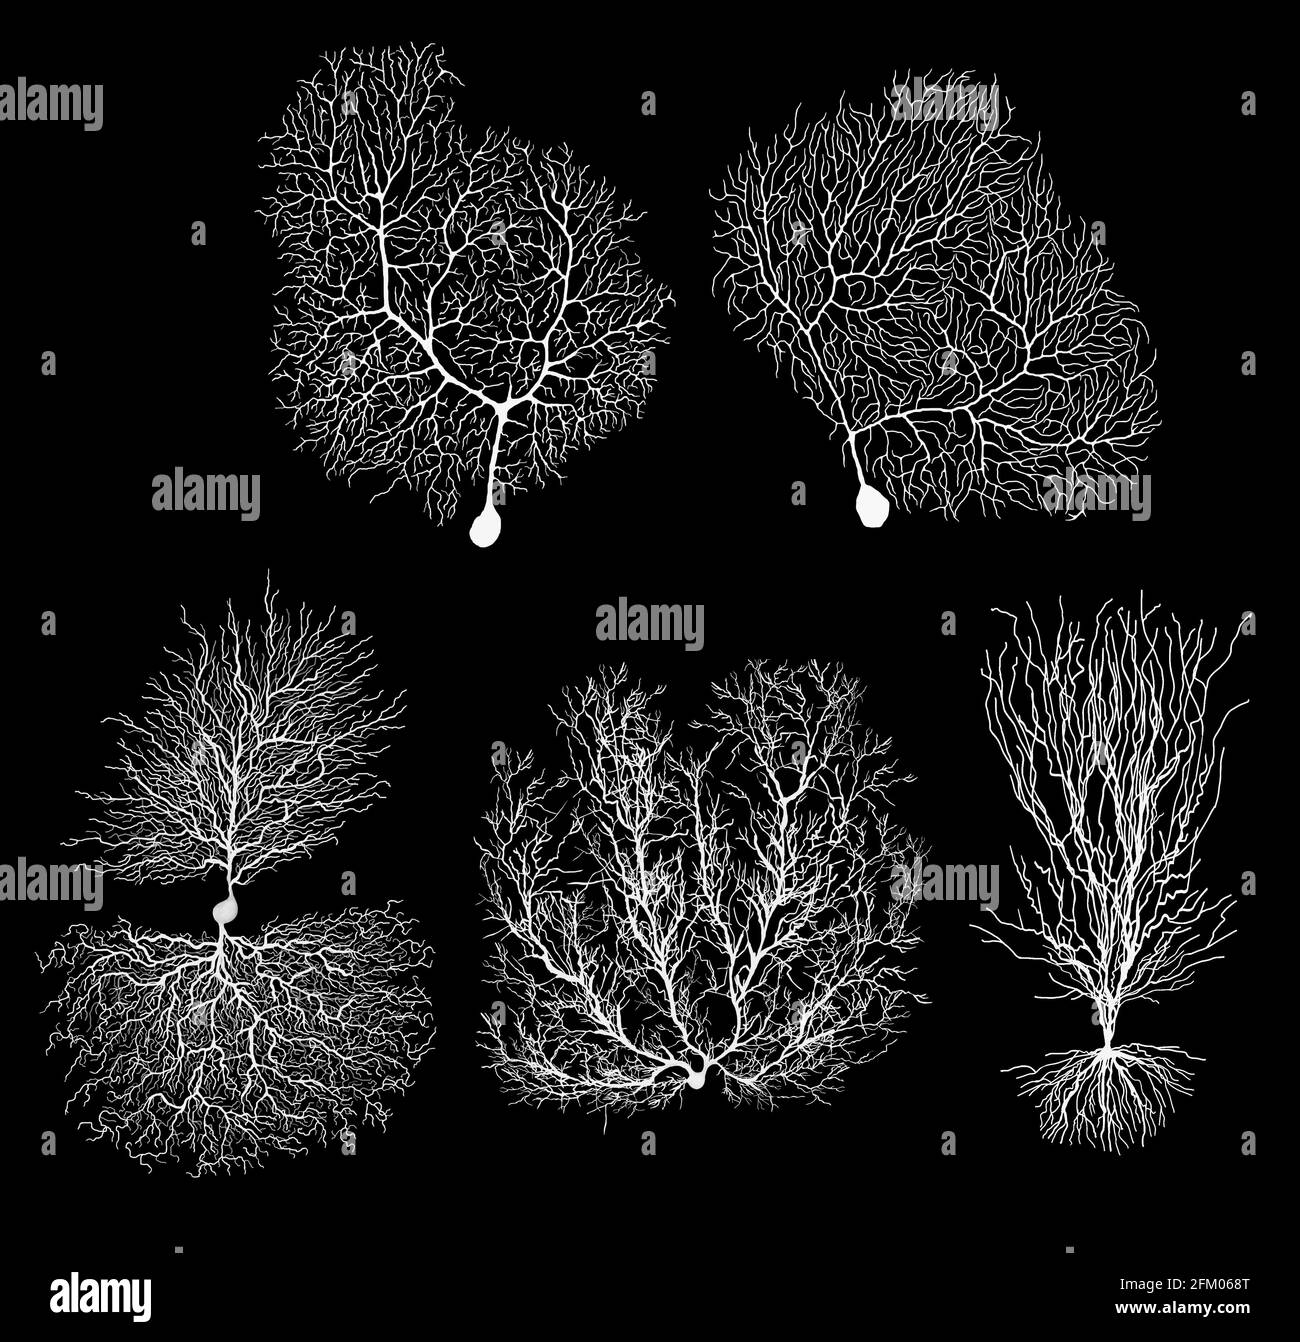 neurone biologico di sviluppo umano con cellula su nero Foto Stock